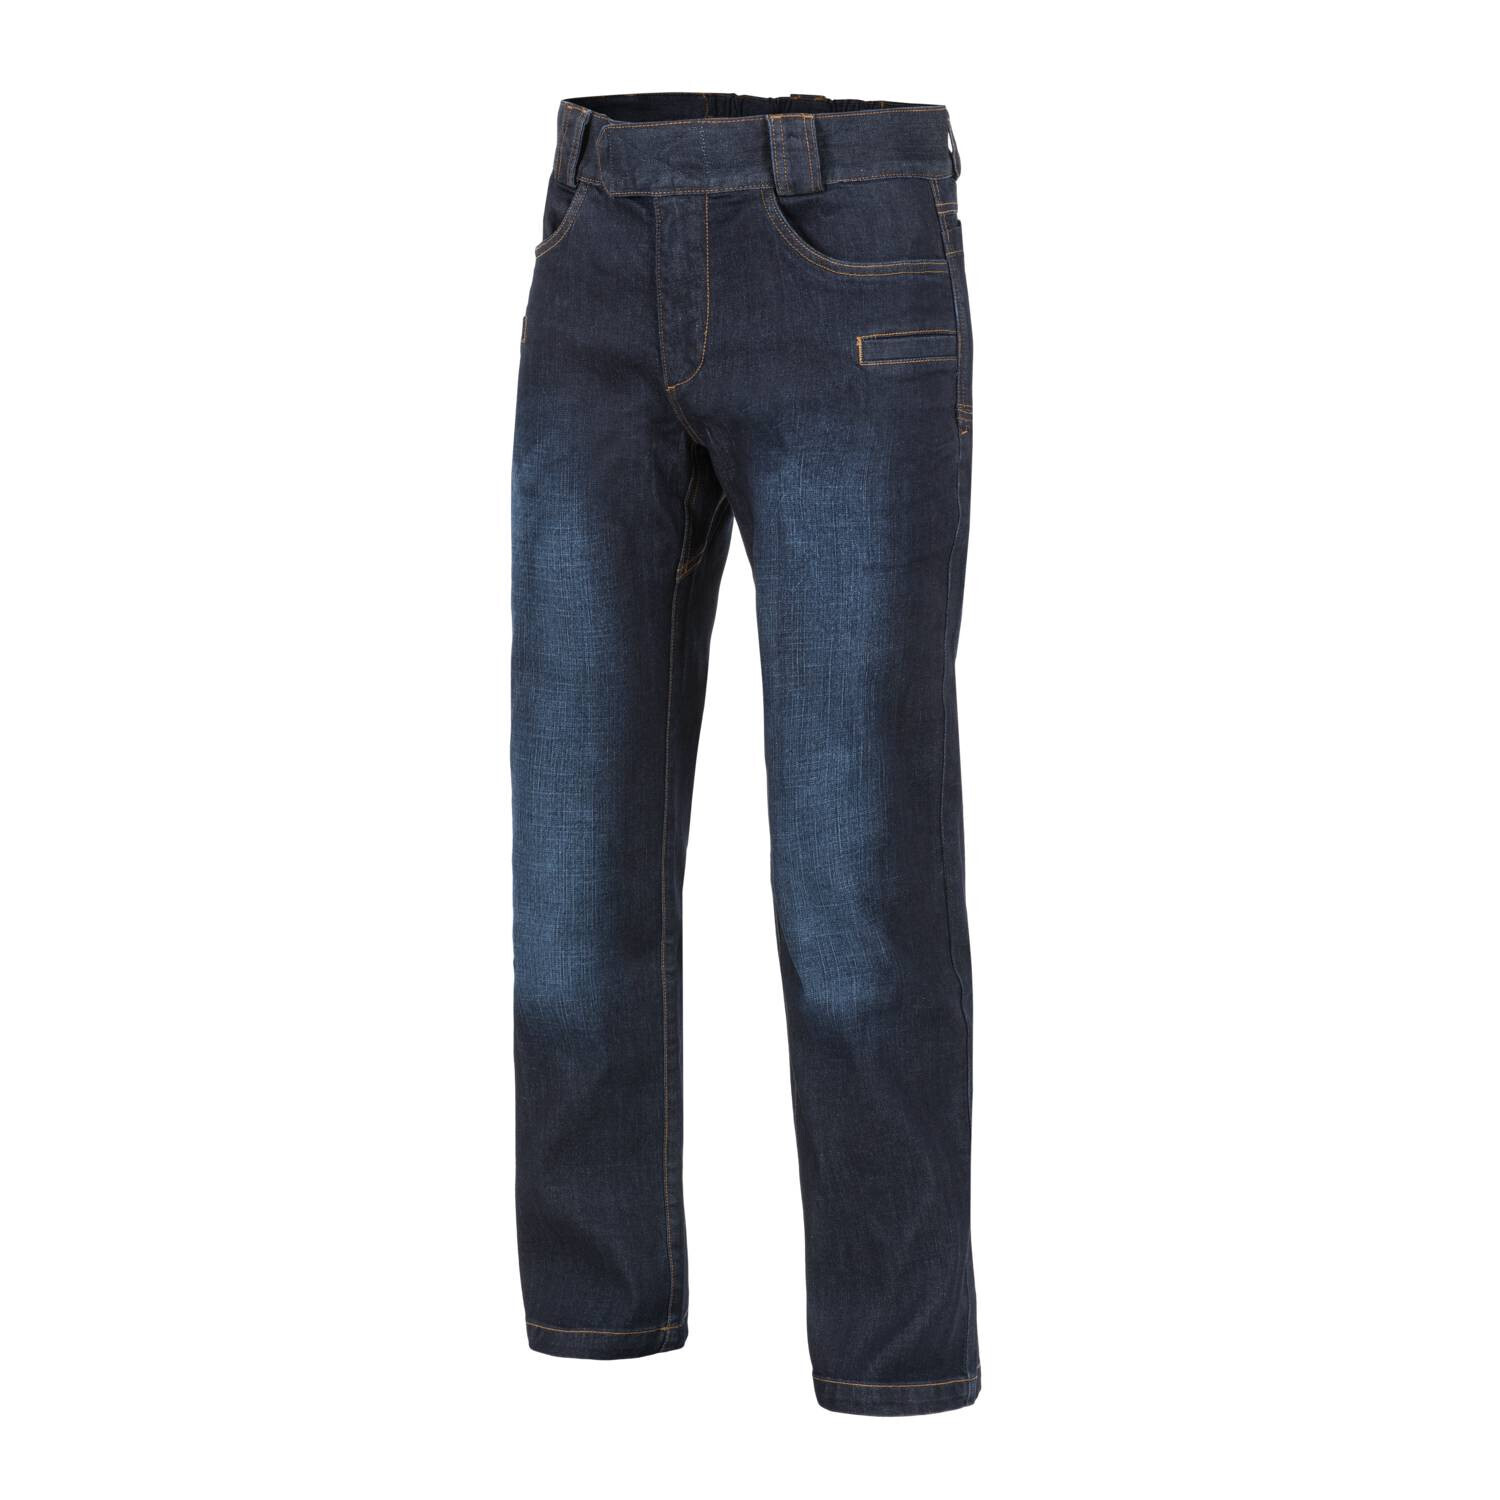 Услуга доставки Джинсы Helikon Greyman Tactical Jeans Denim Mid, Размер: s/regular, Цвет: Dark Blue